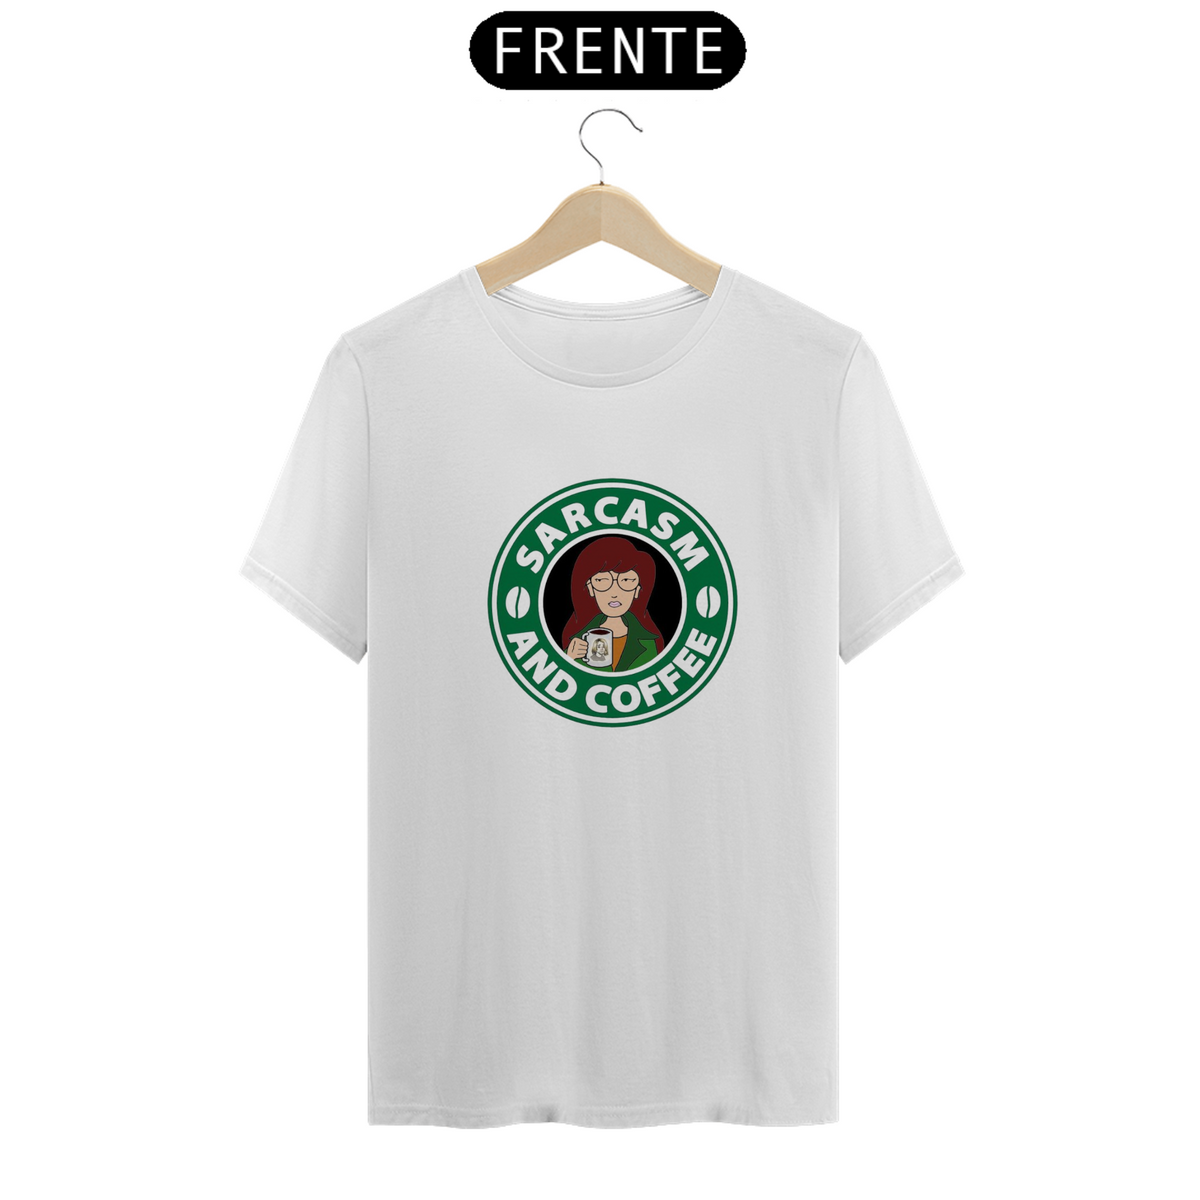 Nome do produto: Camiseta Sarcasm and coffee